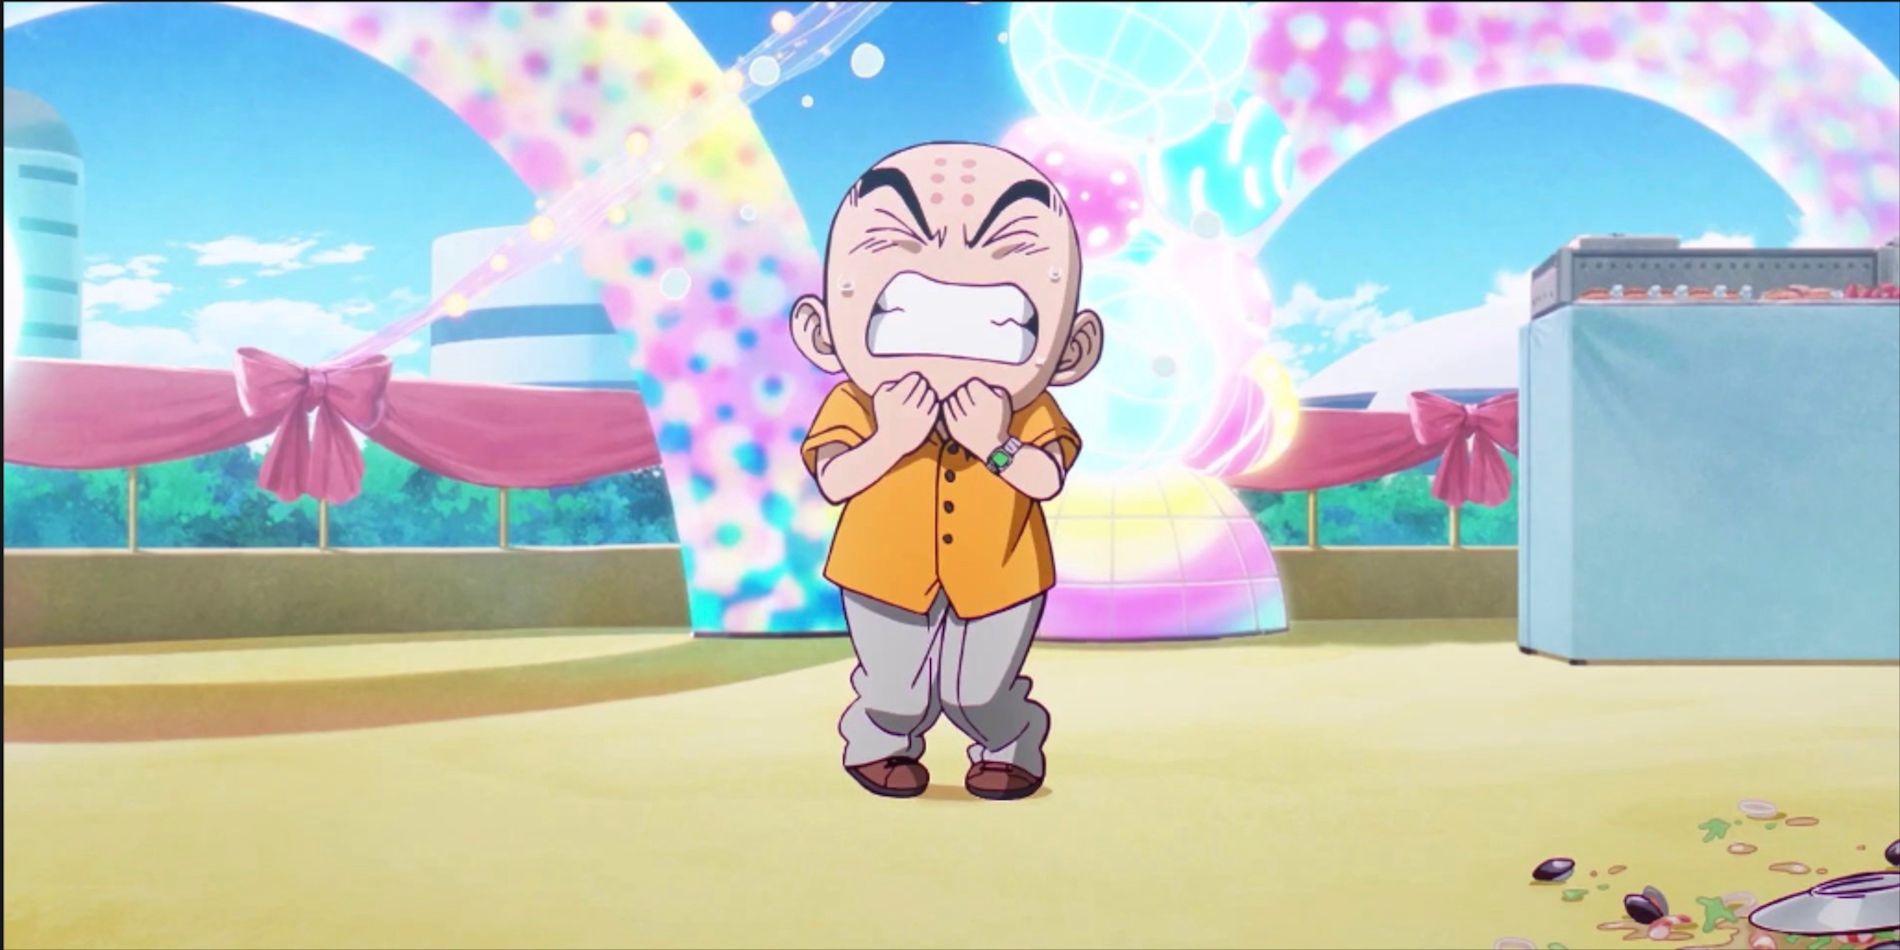 Dragon Ball получает комбинезоны Гоку и многое другое в новой версии детской одежды